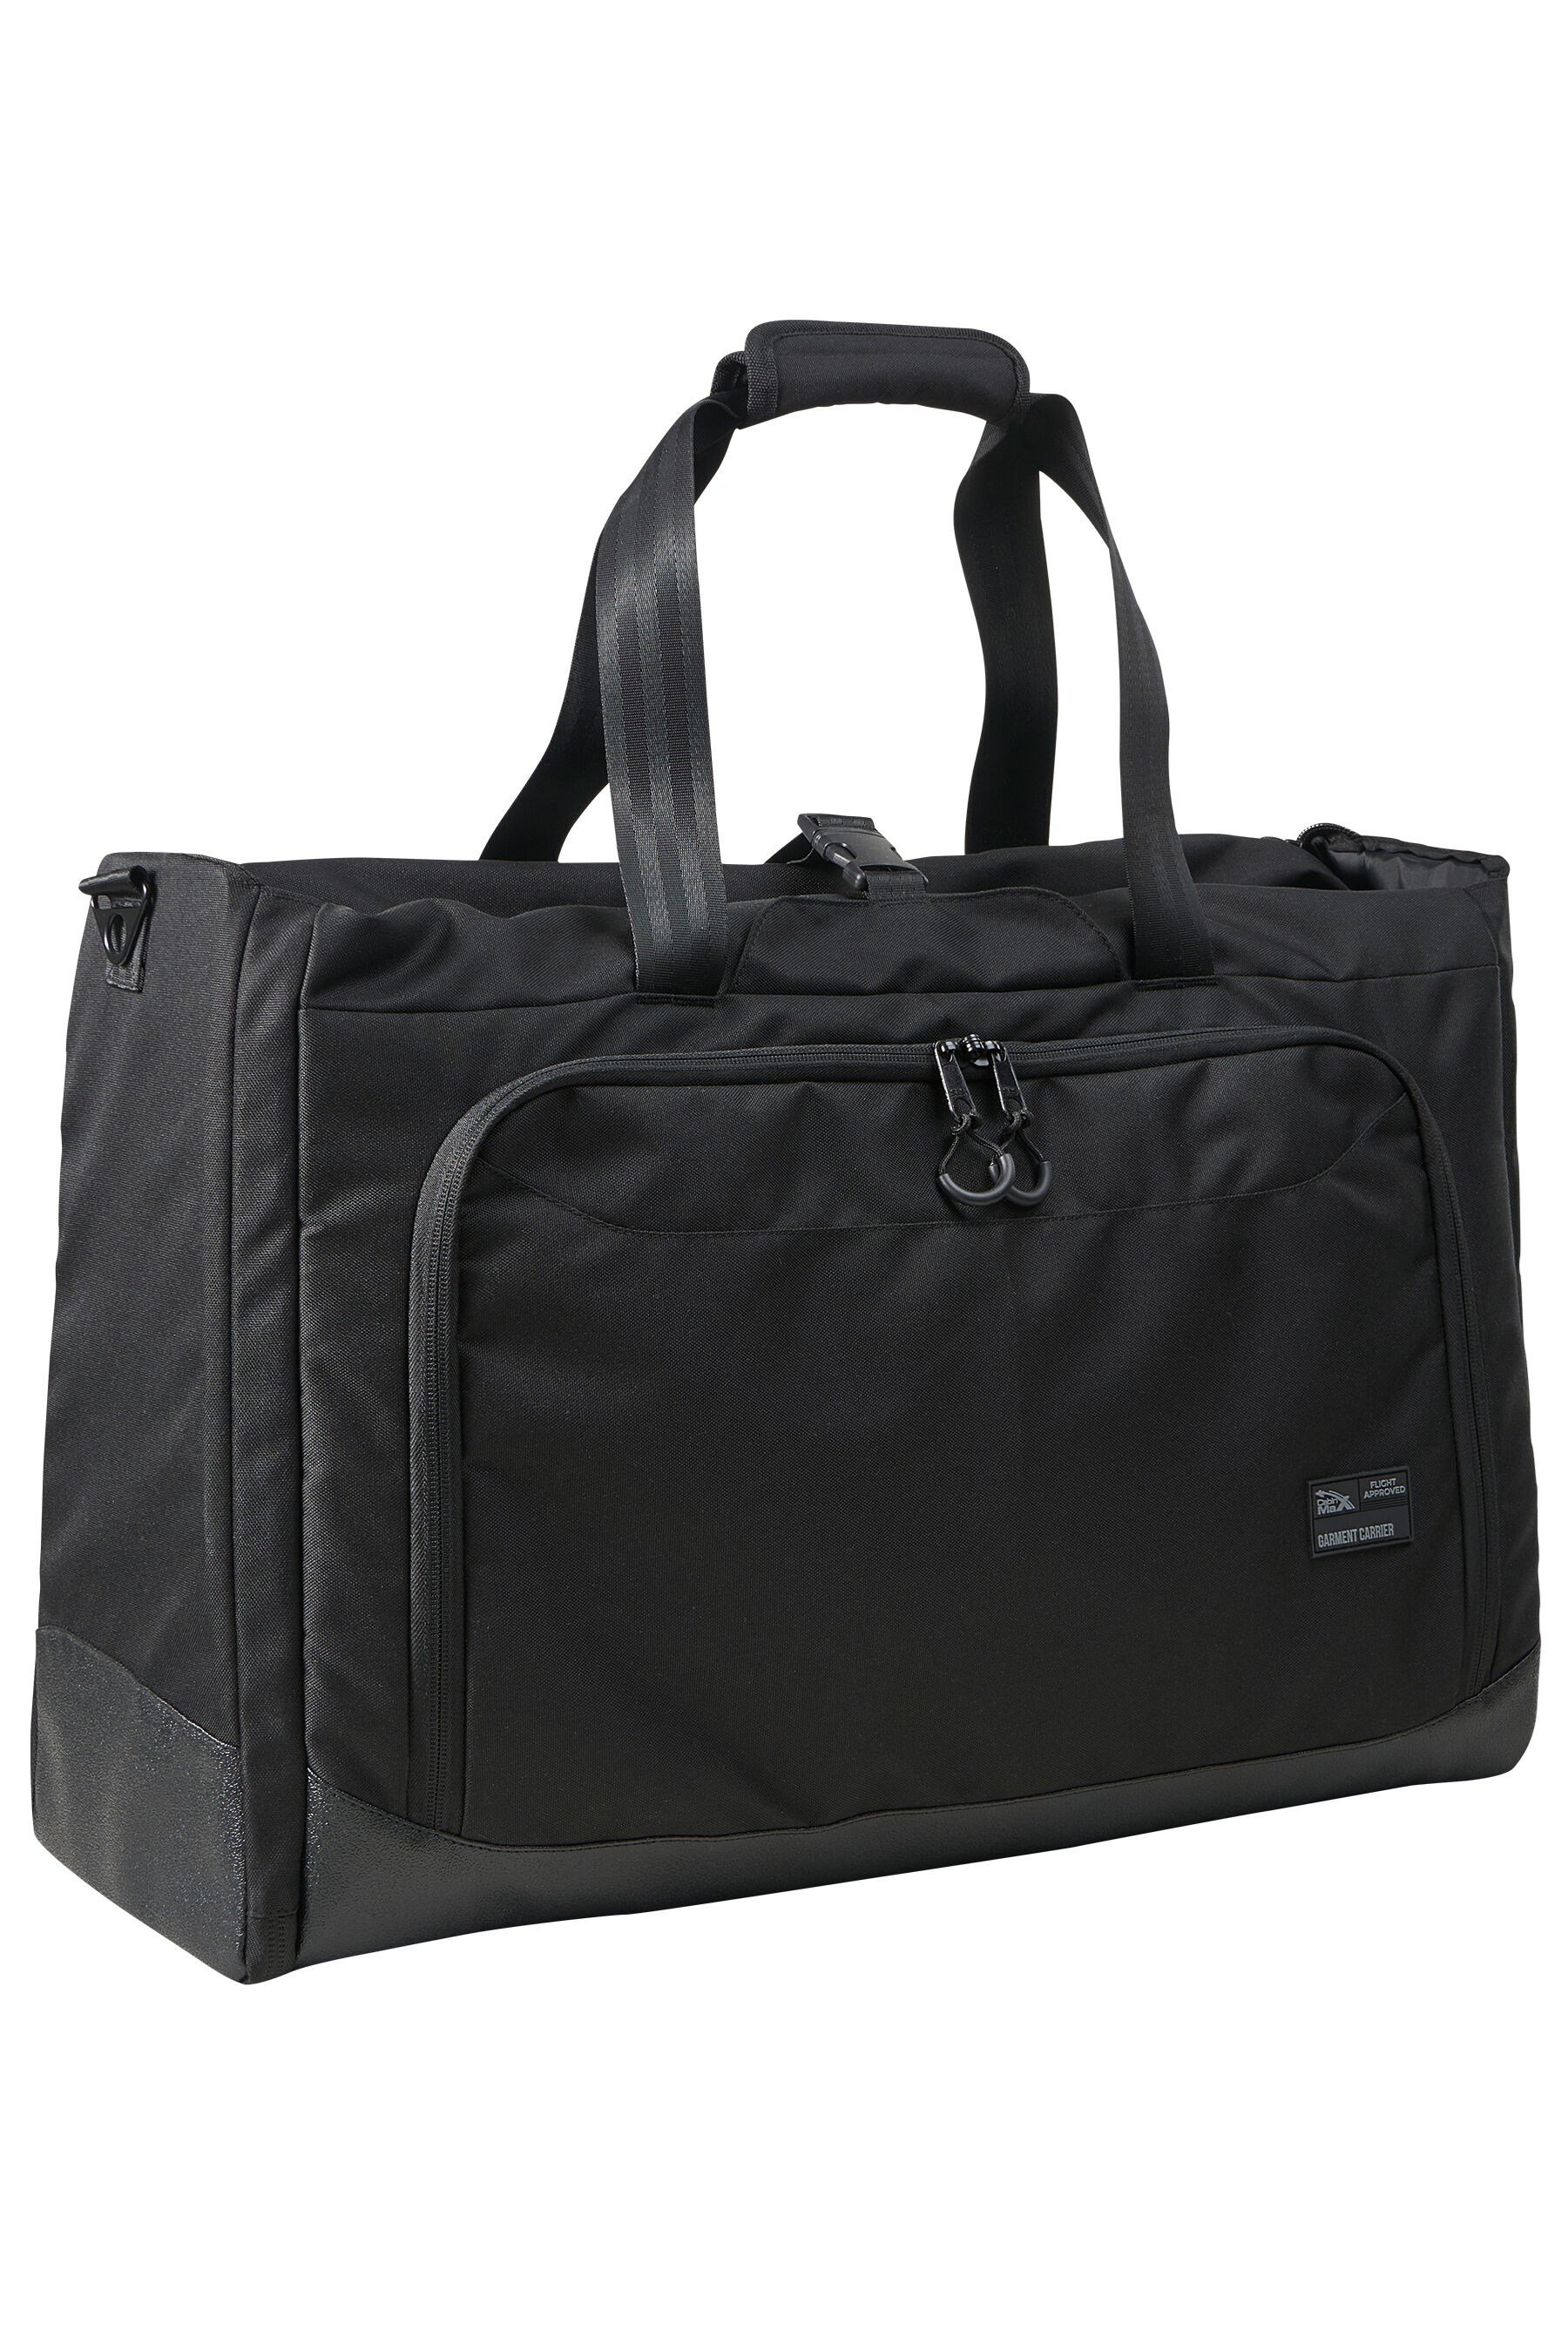 Suit Carrier Holdall Shoulder Bag 55x40x20cm -